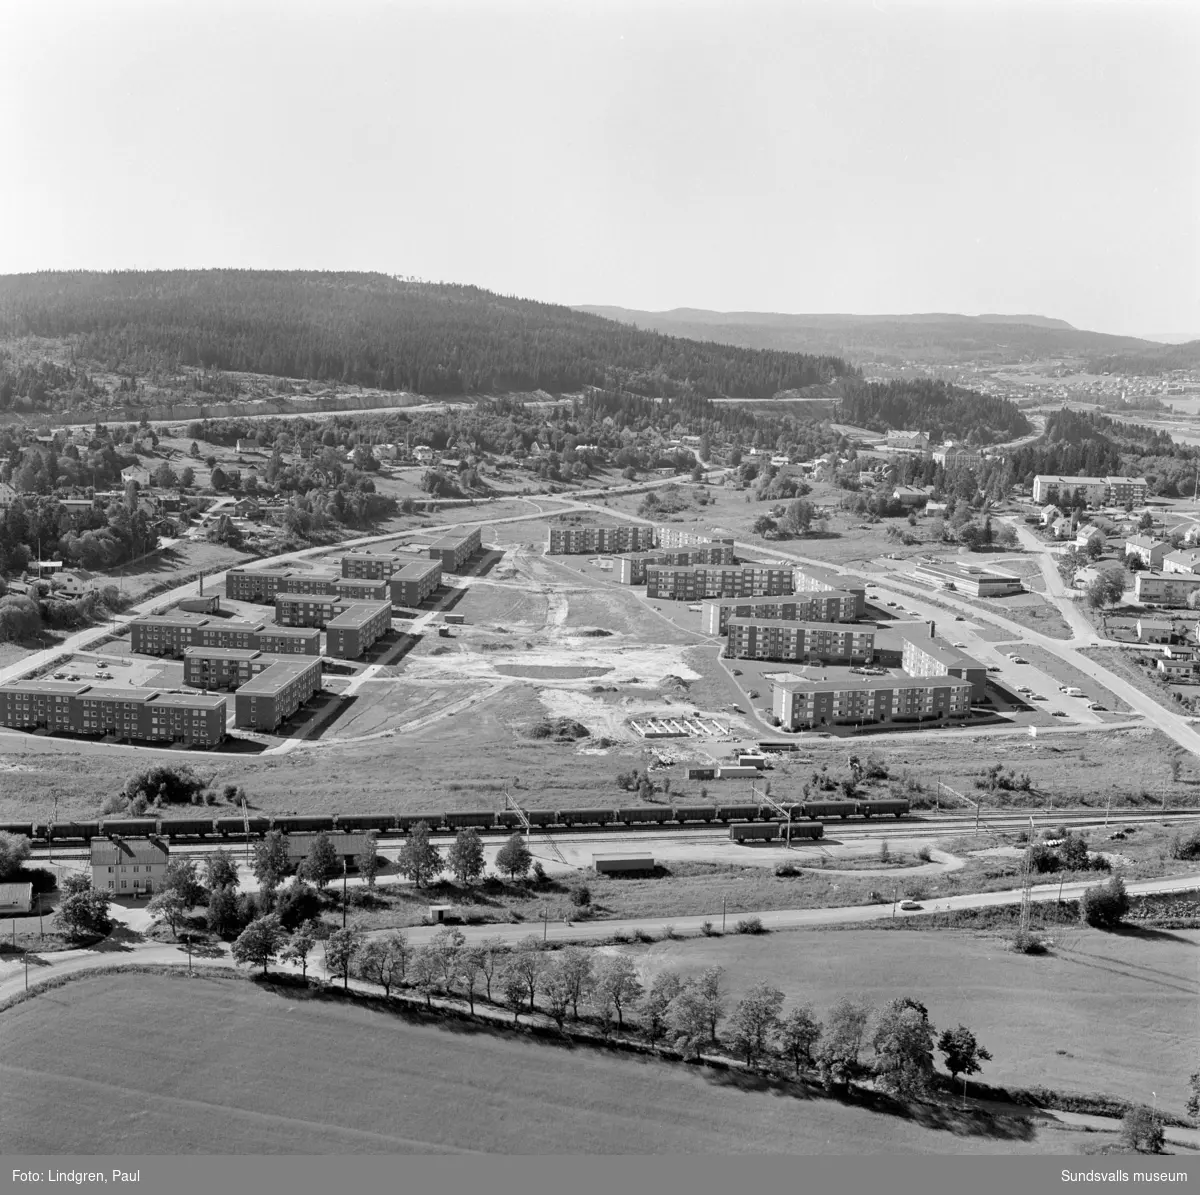 Flerbostadshus vid Johannedalsvägen och Hammarvägen i Sundsbruk, 1970. Svenska Riksbyggen uppförde på 1960-talet bostadsrätter i trevånings lamellhus vid Johannedalsvägen (Skönshus nr 1) och AB Skönsbergsbyggen uppförde hyresrätter vid Hammarvägen.